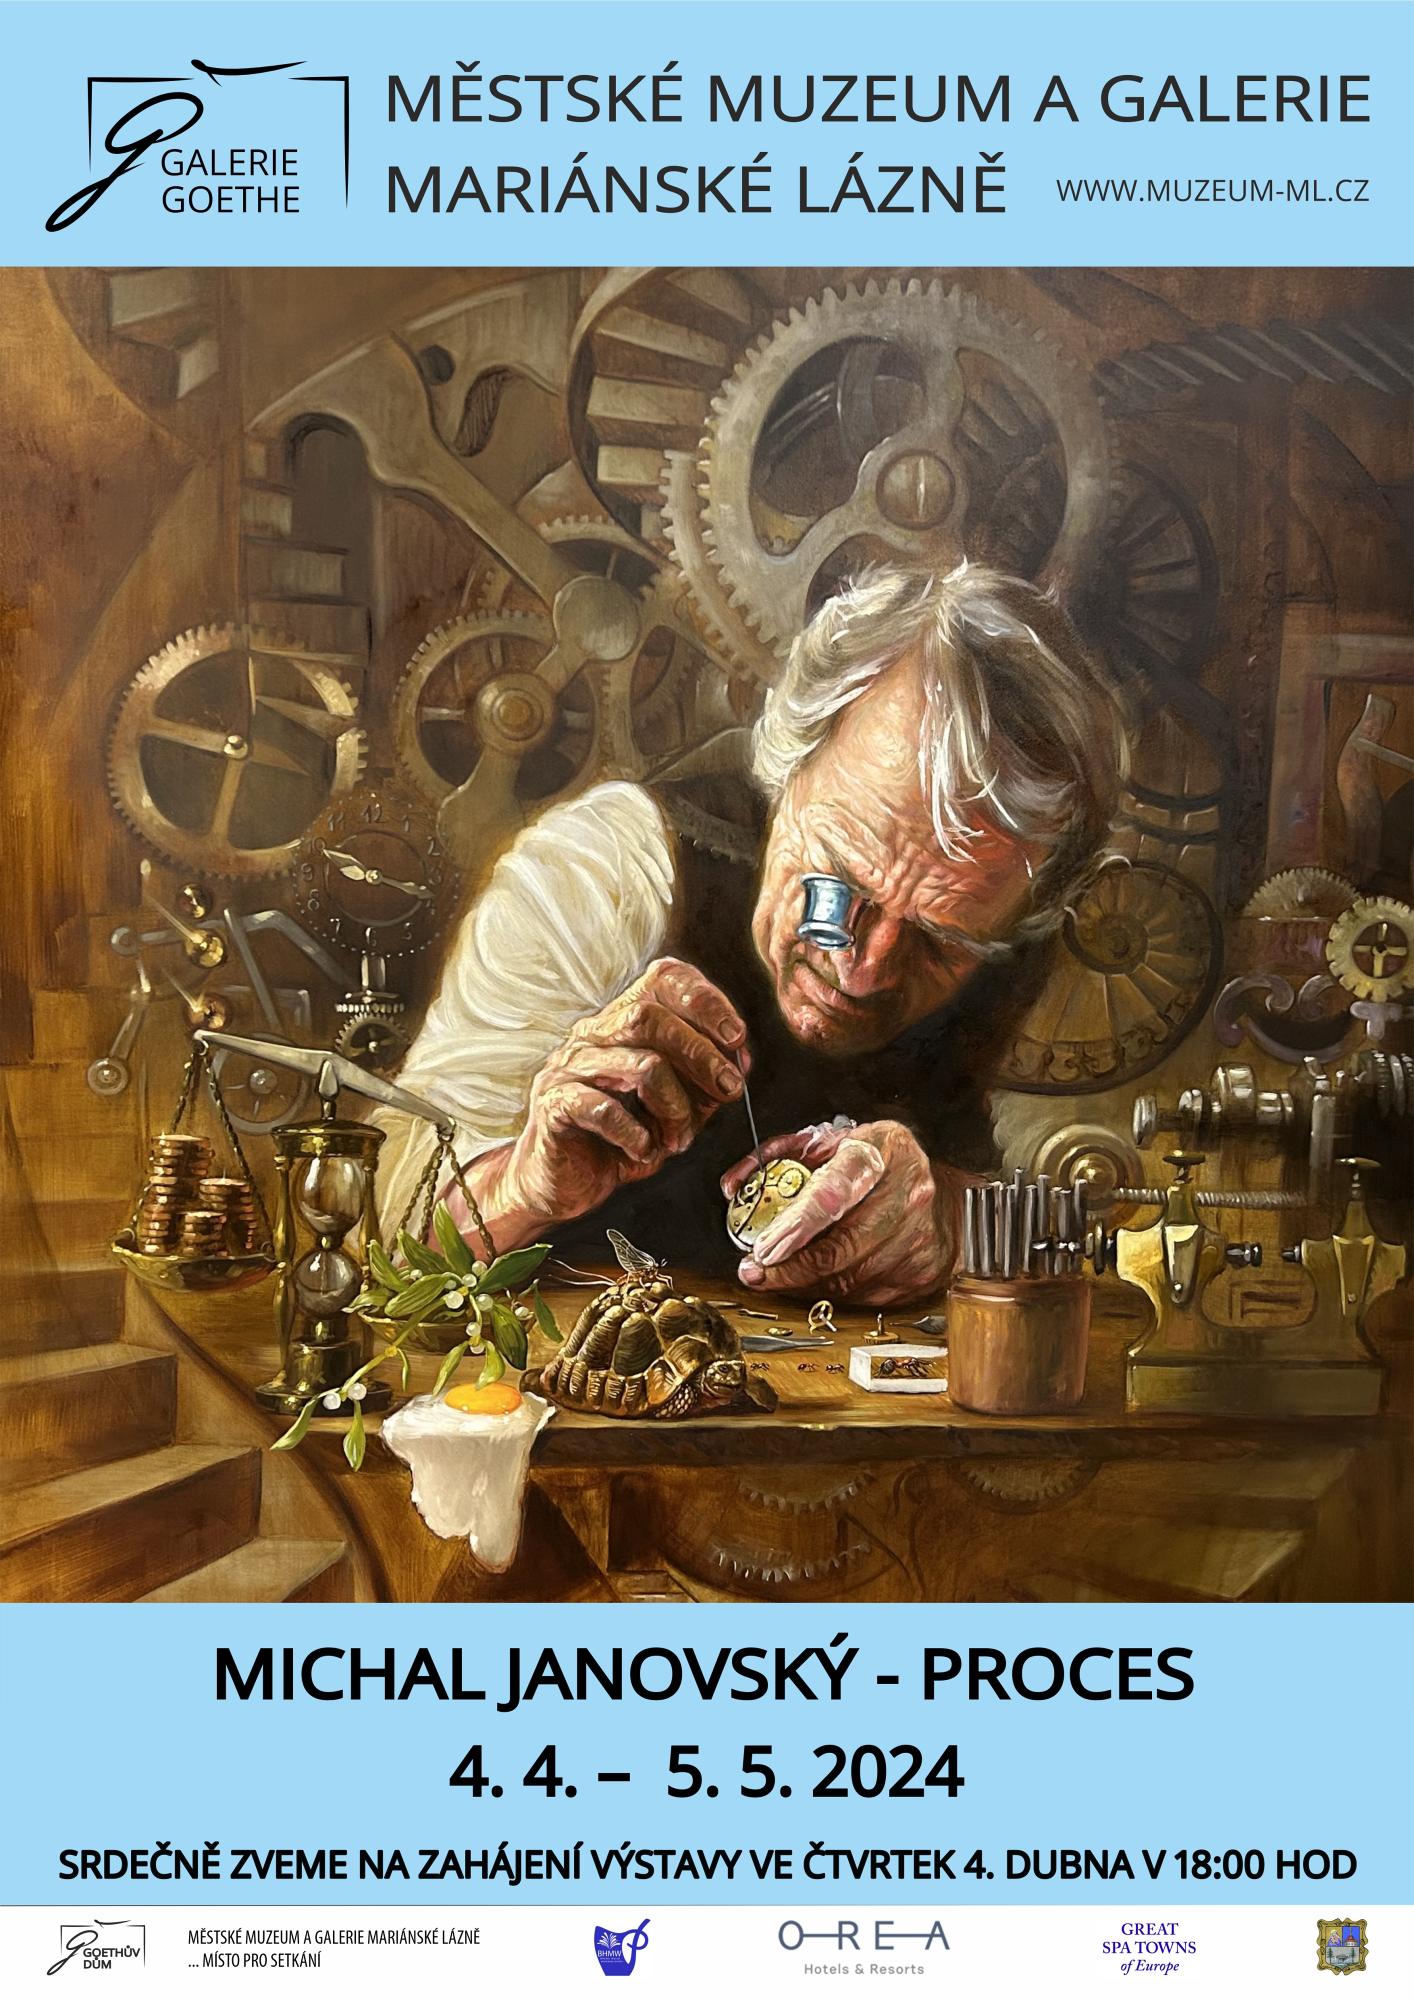 Michal Janovský: Proces